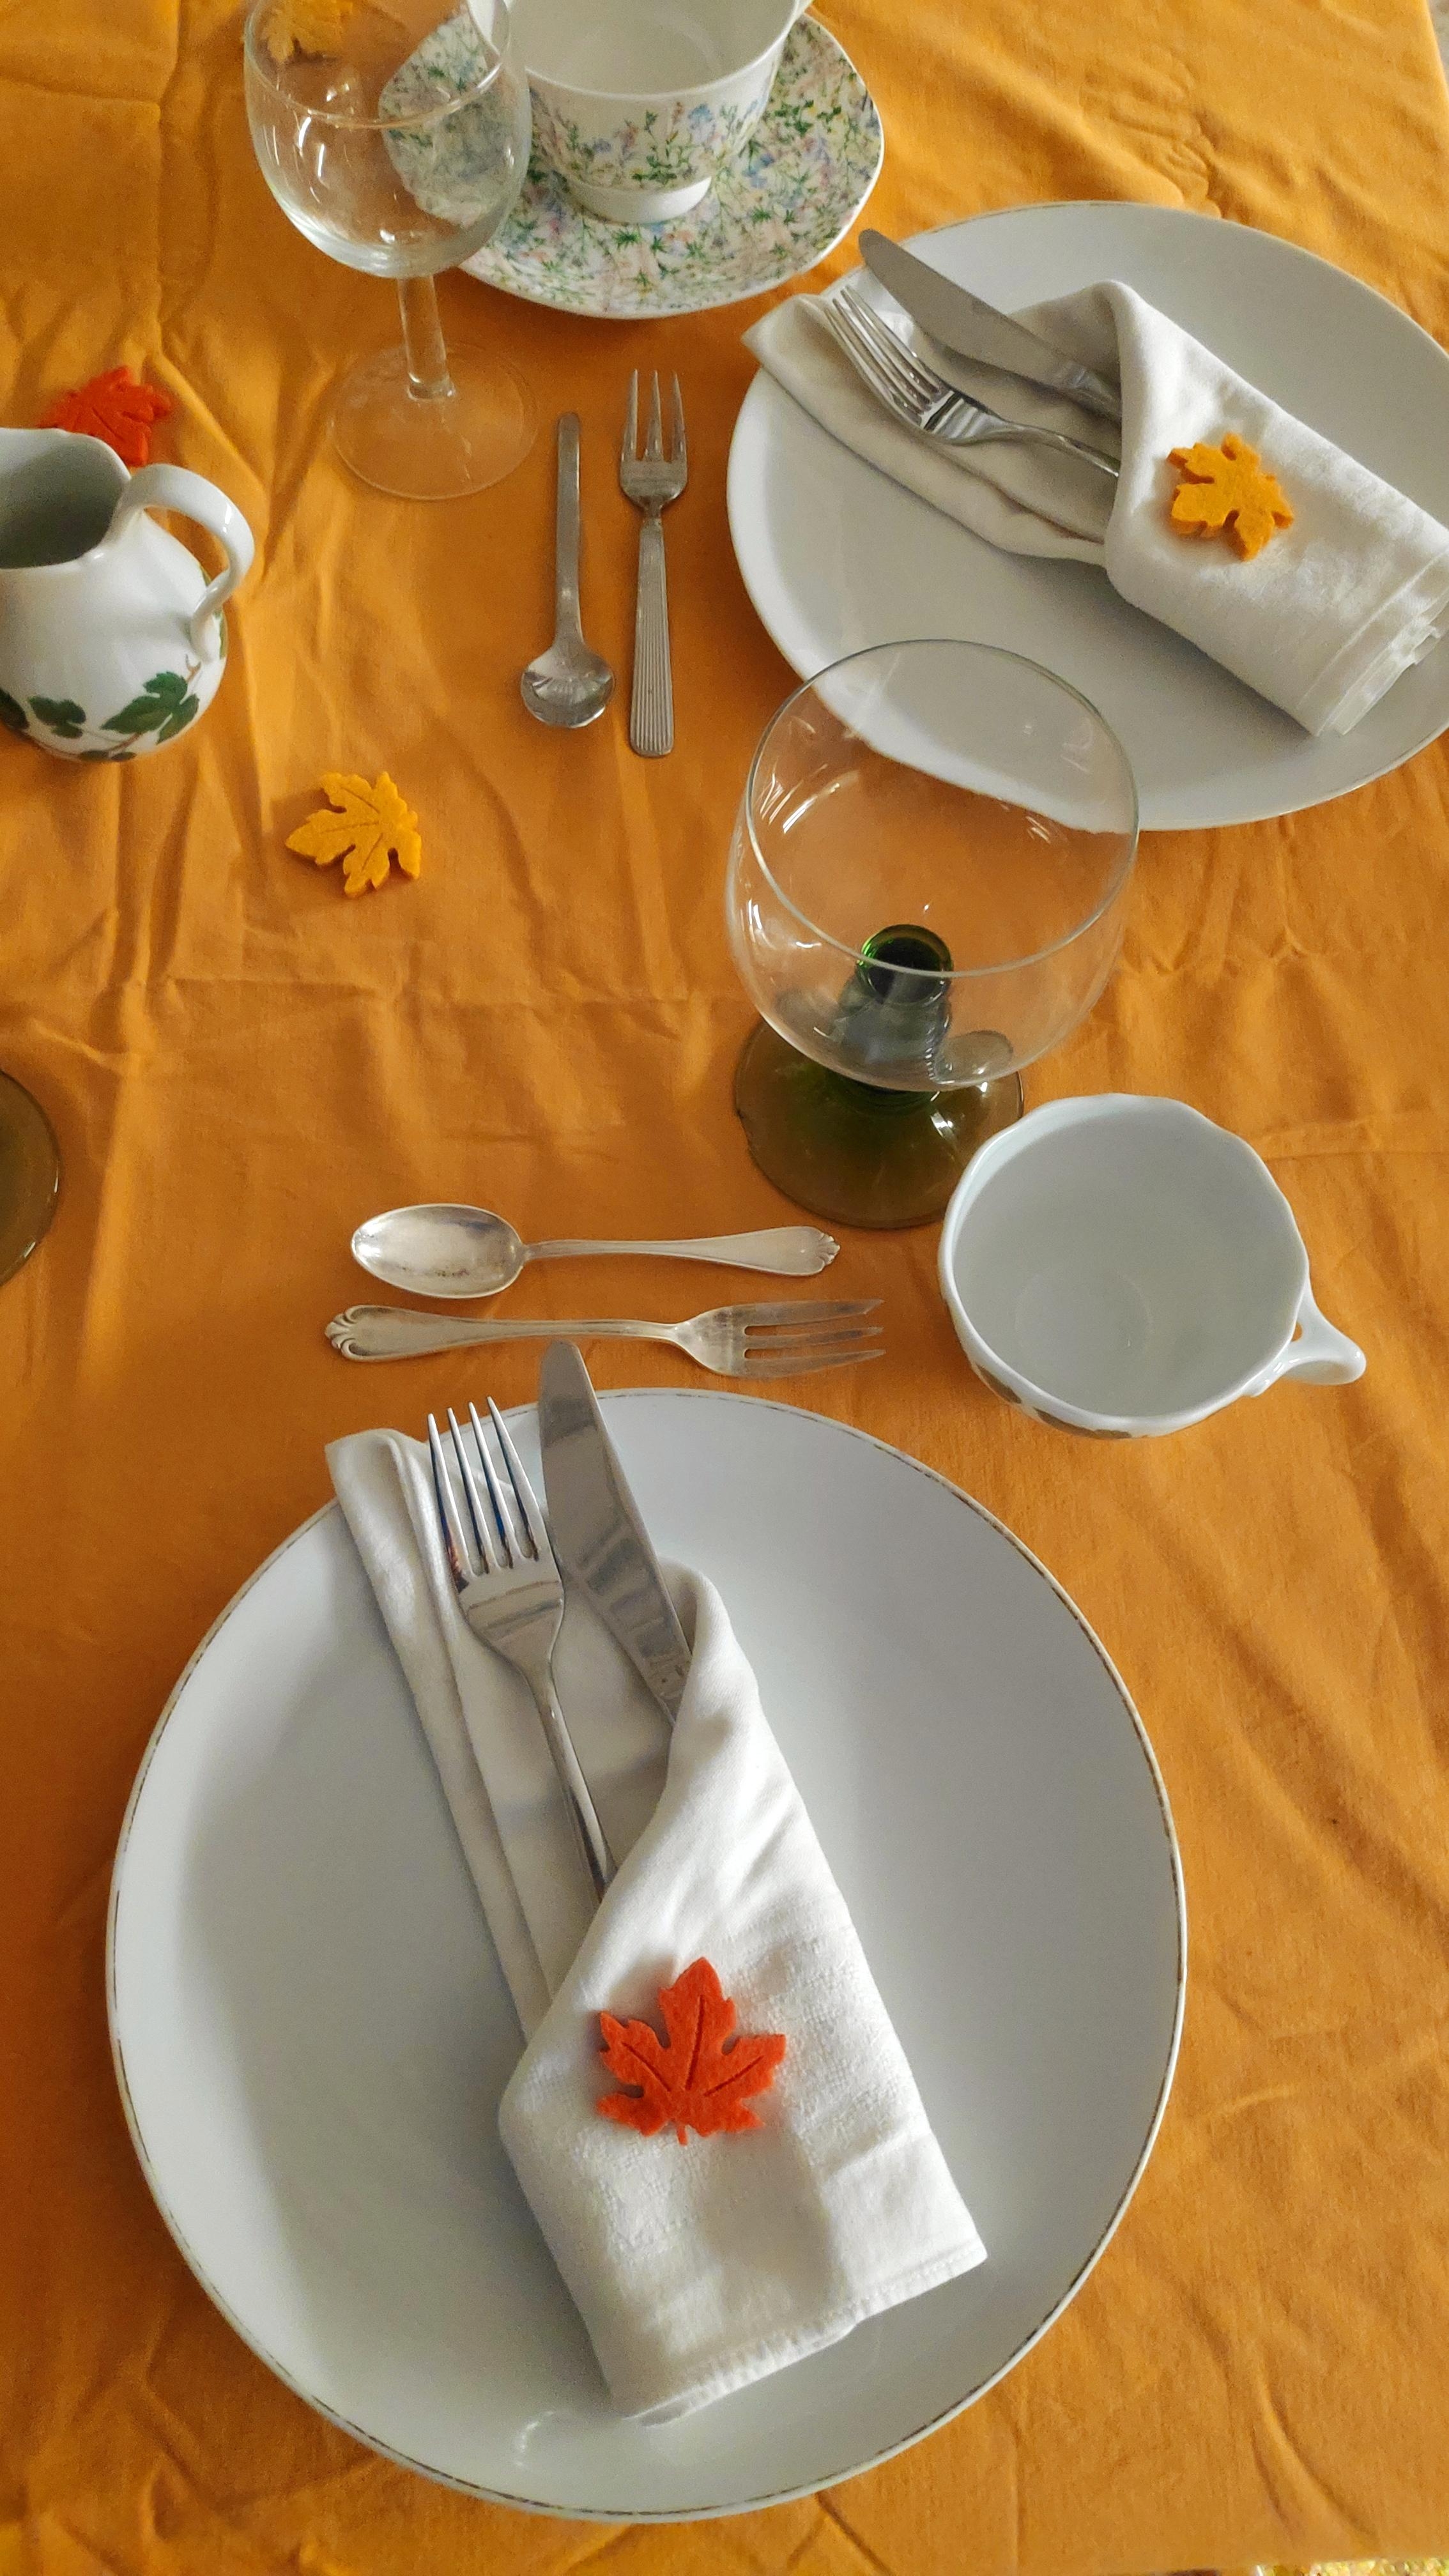 .Sonnige Farben an grauen Tagen.
#Herbsttisch #Geburtstagstisch #eclectichome #Stilmix #Tischdeko #Tischdecken #Vintage